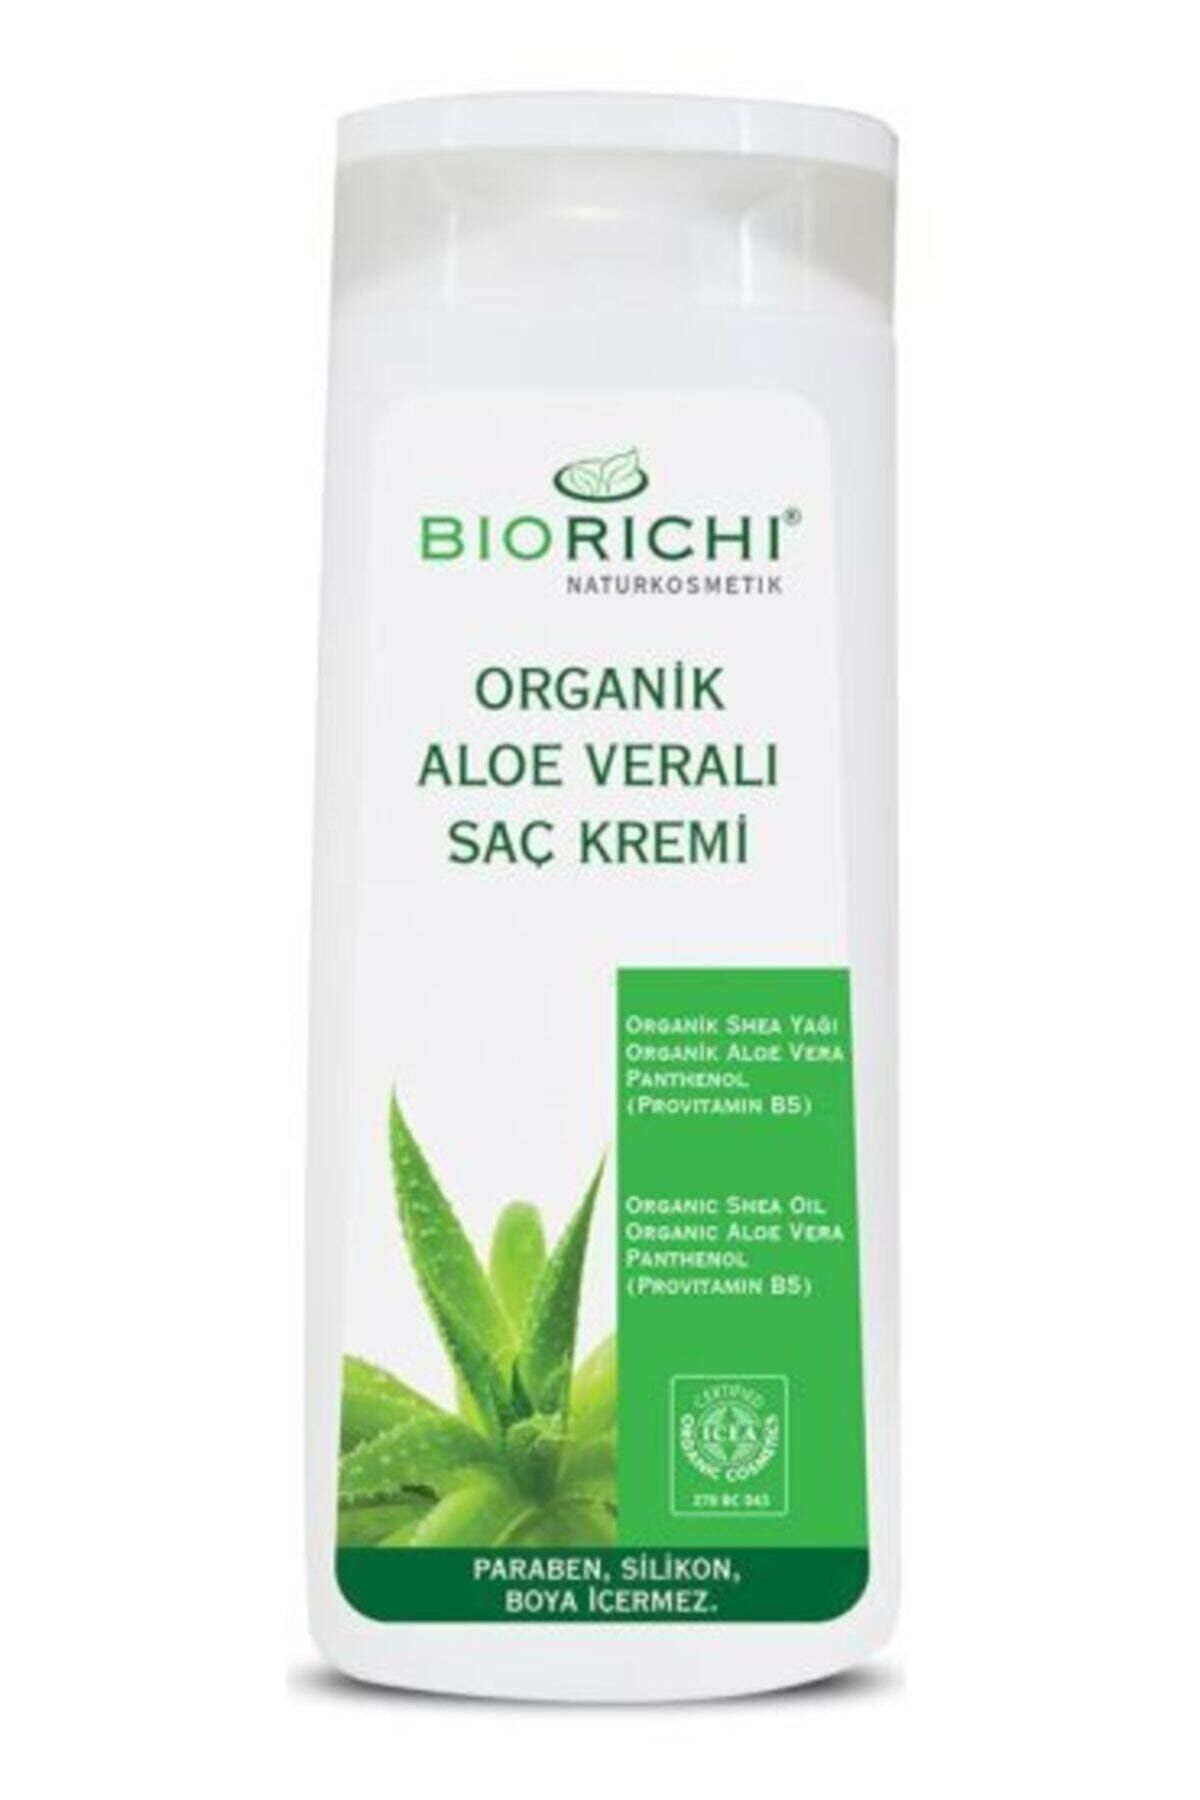 Biorichi Organik Aloe Veralı Saç Kremi